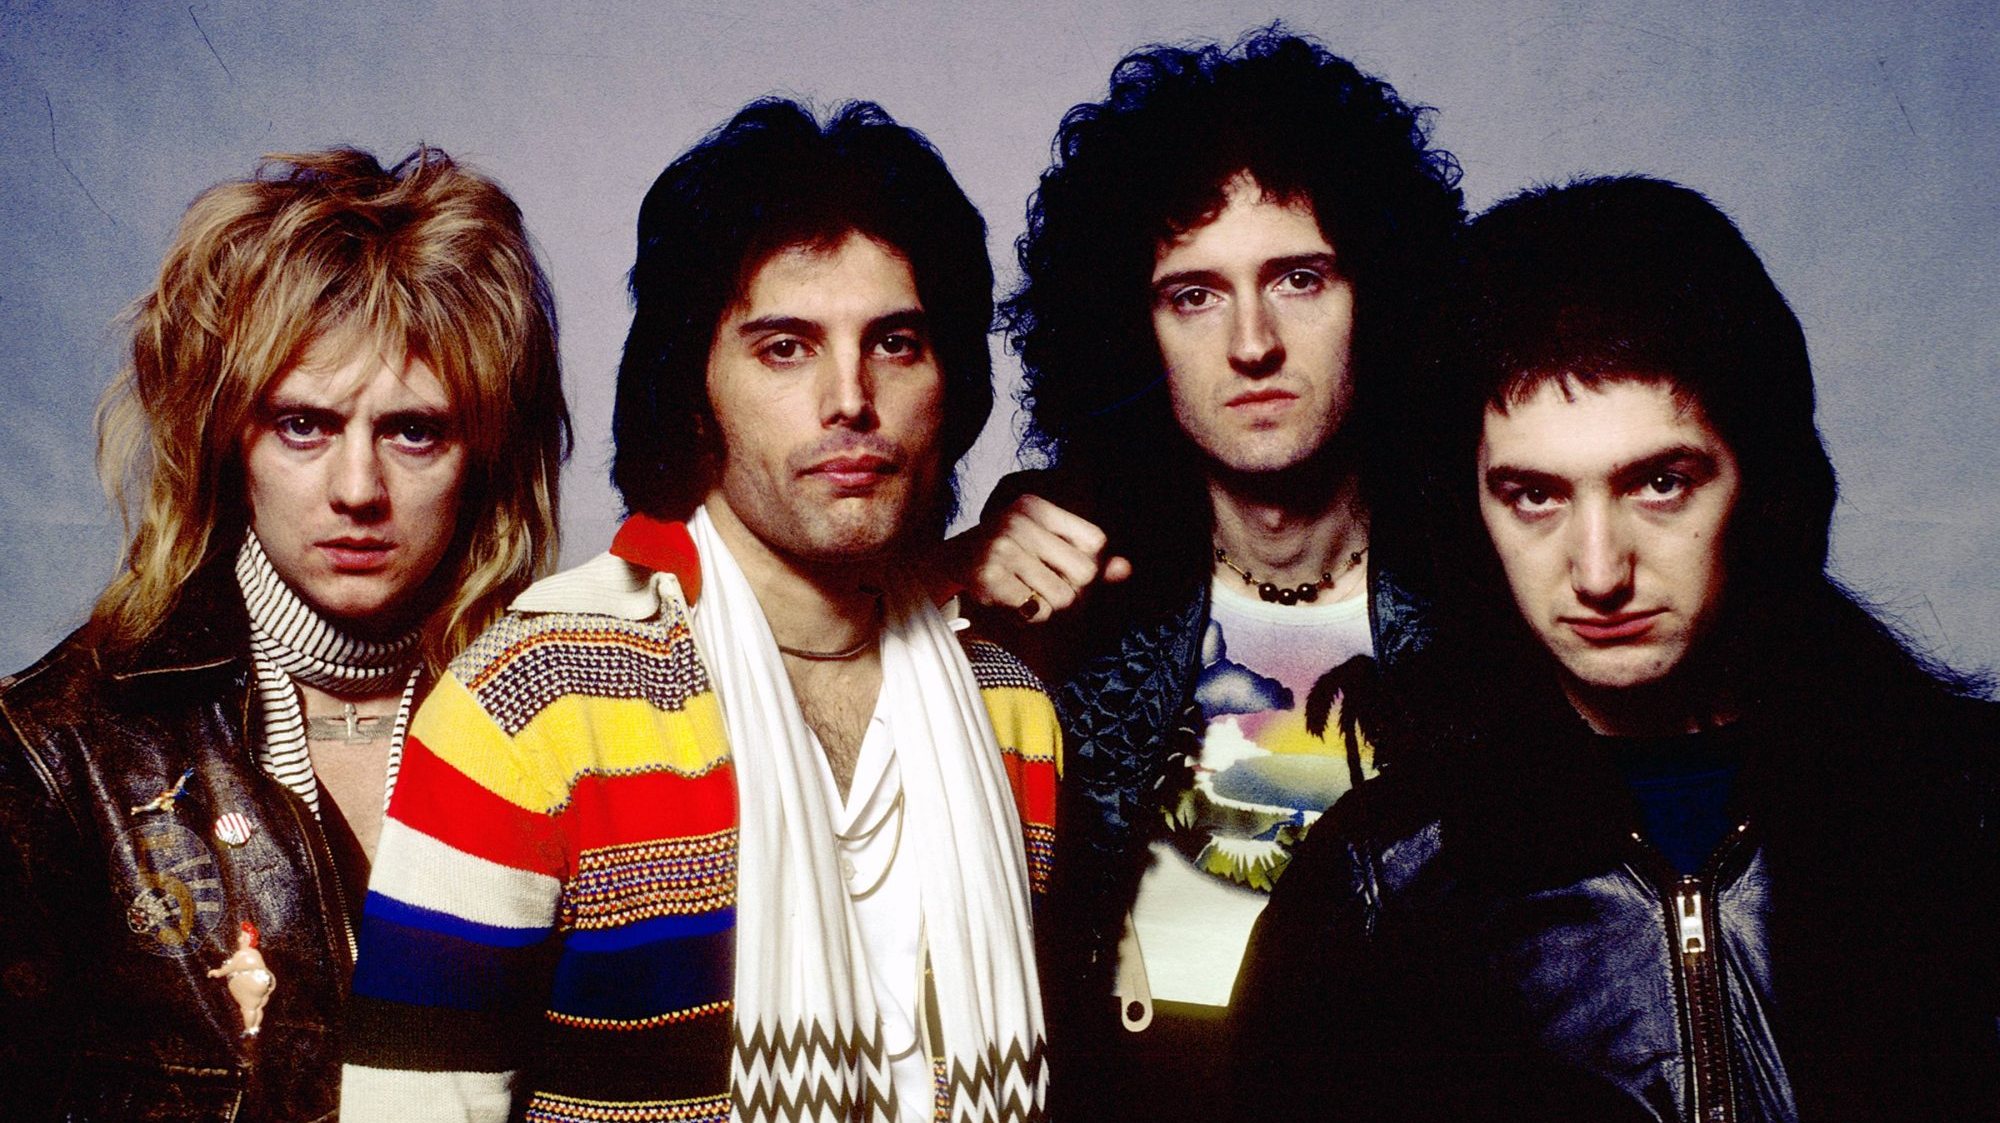 O valor em causa deve-se em parte ao ressurgimento da popularidade da banda que, em 2018, voltou aos topos das tabelas graças ao filme “Bohemian Rhapsody”